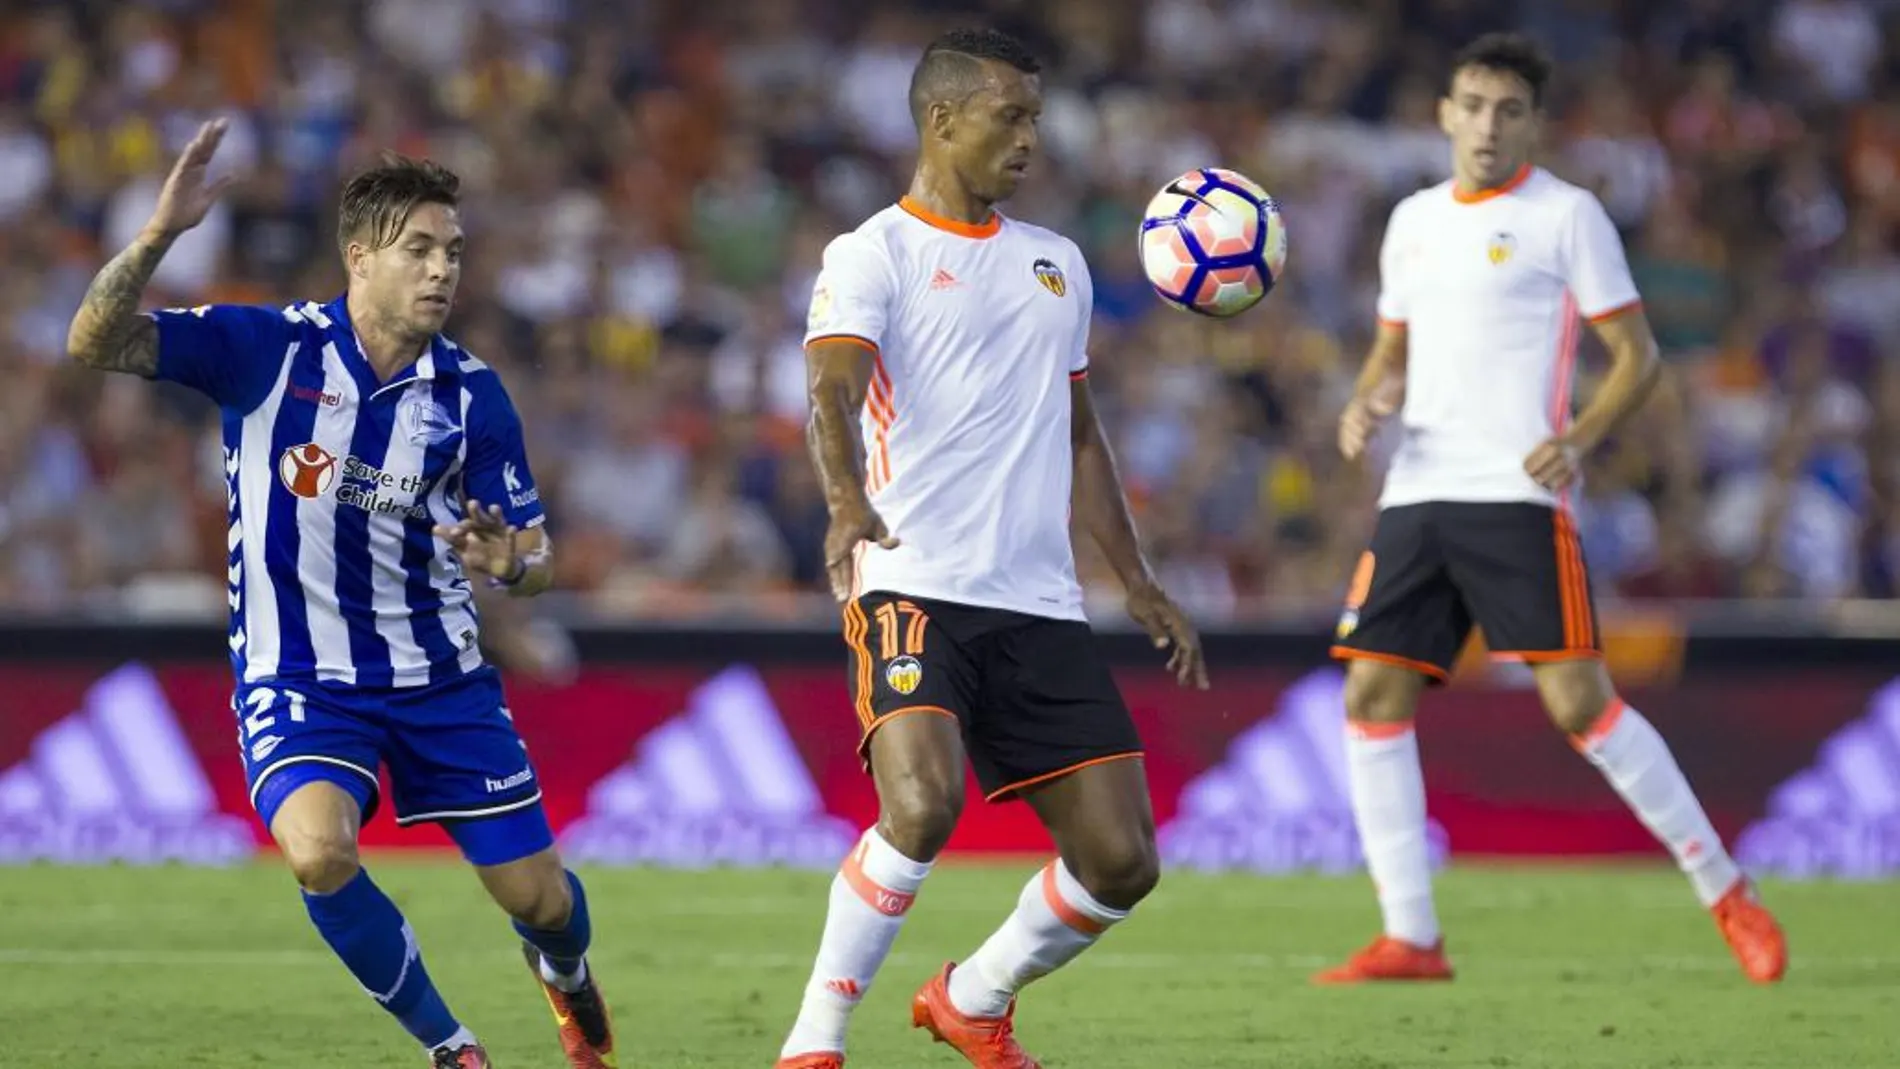 El centrocampista portugués del Valencia, Luis Carlos Almeida "Nani", intenta controlar el balón ante el defensa del Alavés, Kiko Femenía